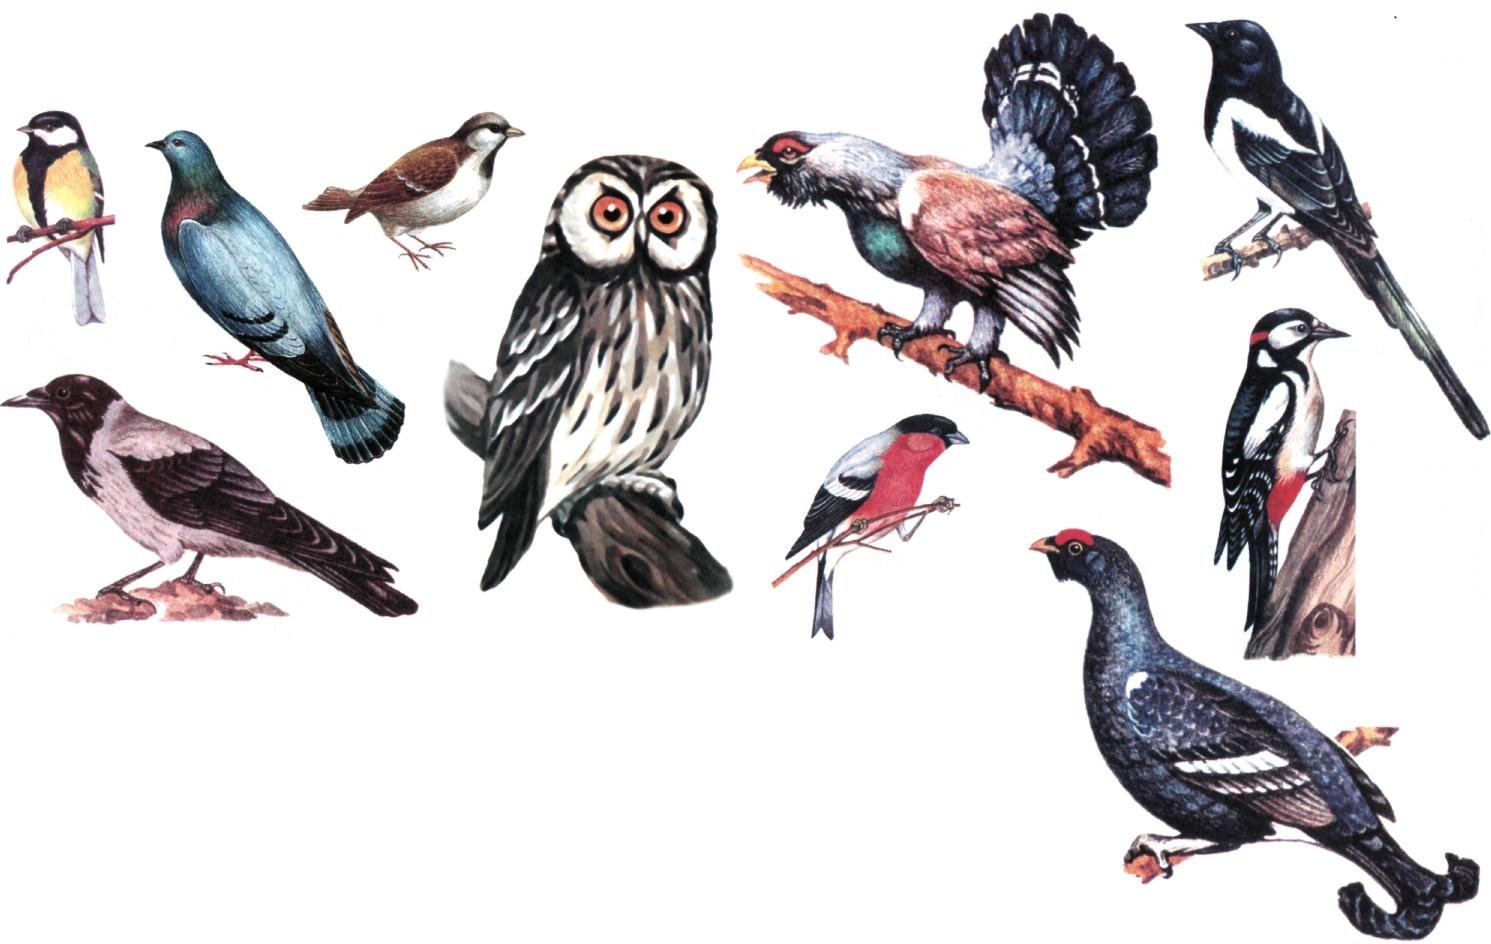 Образ жизни птиц леса